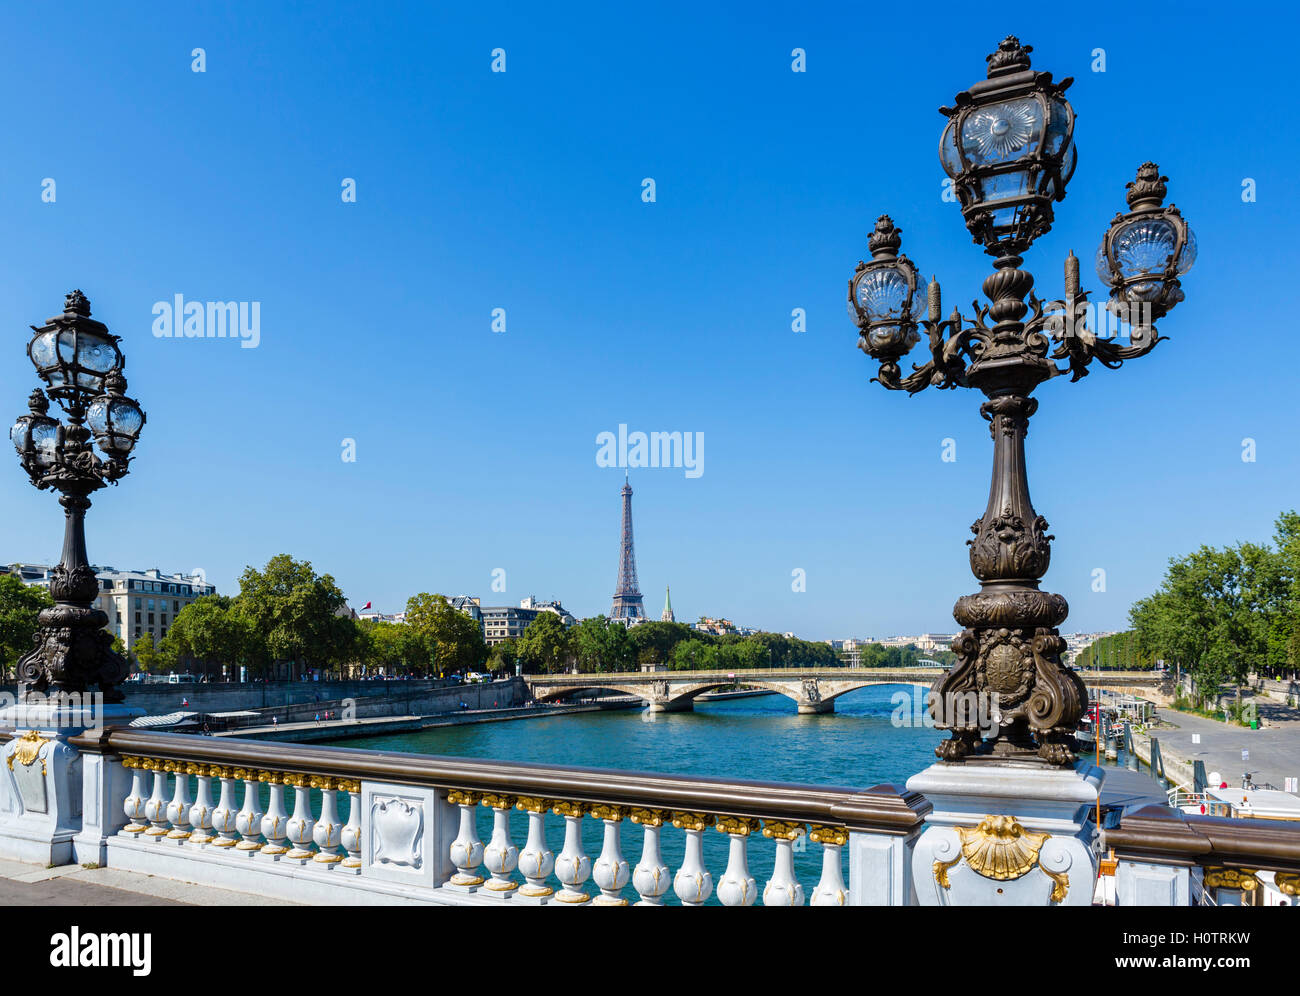 La Seine et la Tour Eiffel (Tour Eiffel), d'Alexandre III Bridge (Pont Alexandre III), Paris, France Banque D'Images